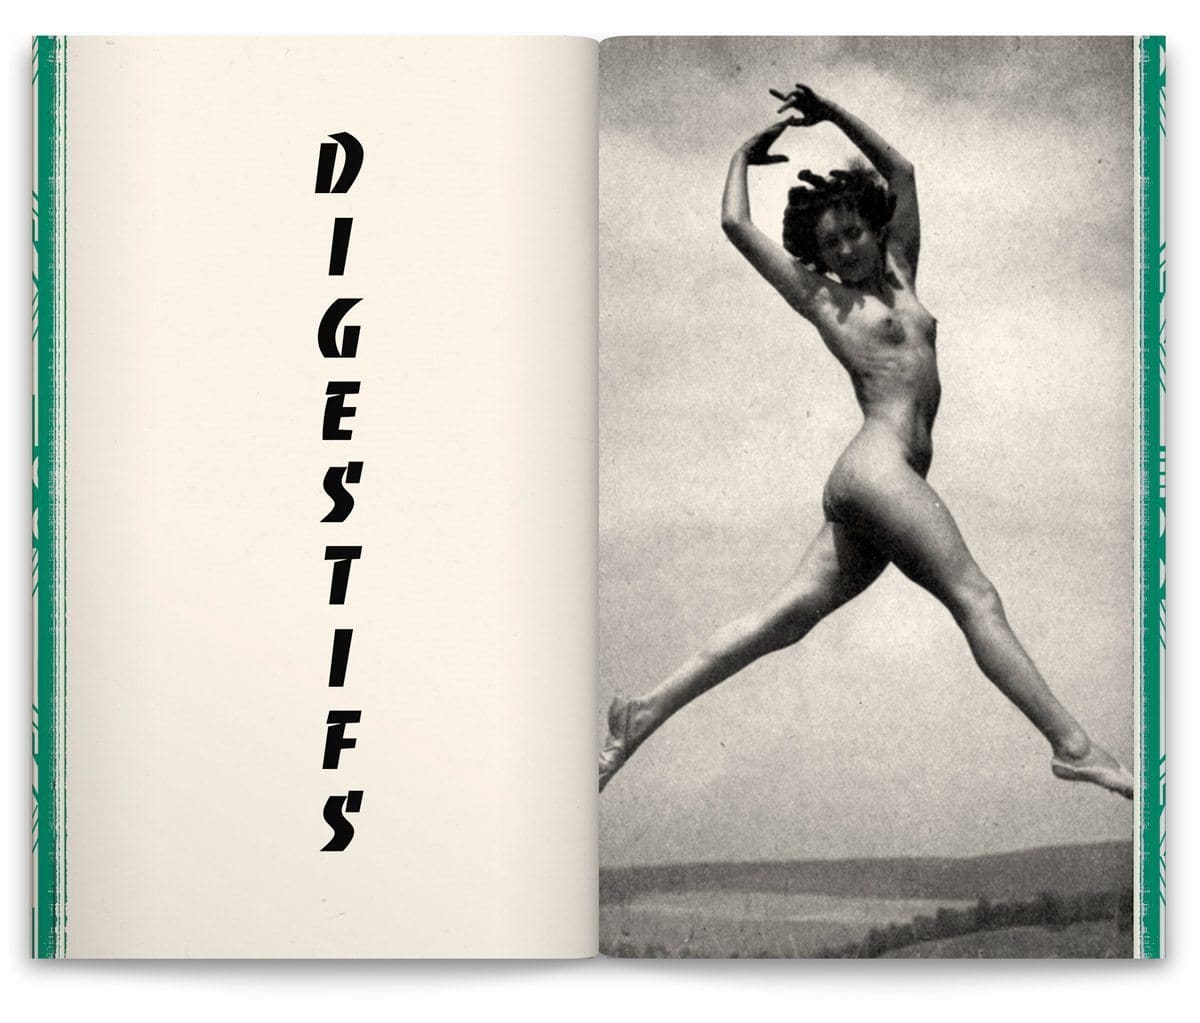 La nouvelle carte du bar parisien Andy Wahloo, page digestifs et femme toute nue, design Ich&Kar